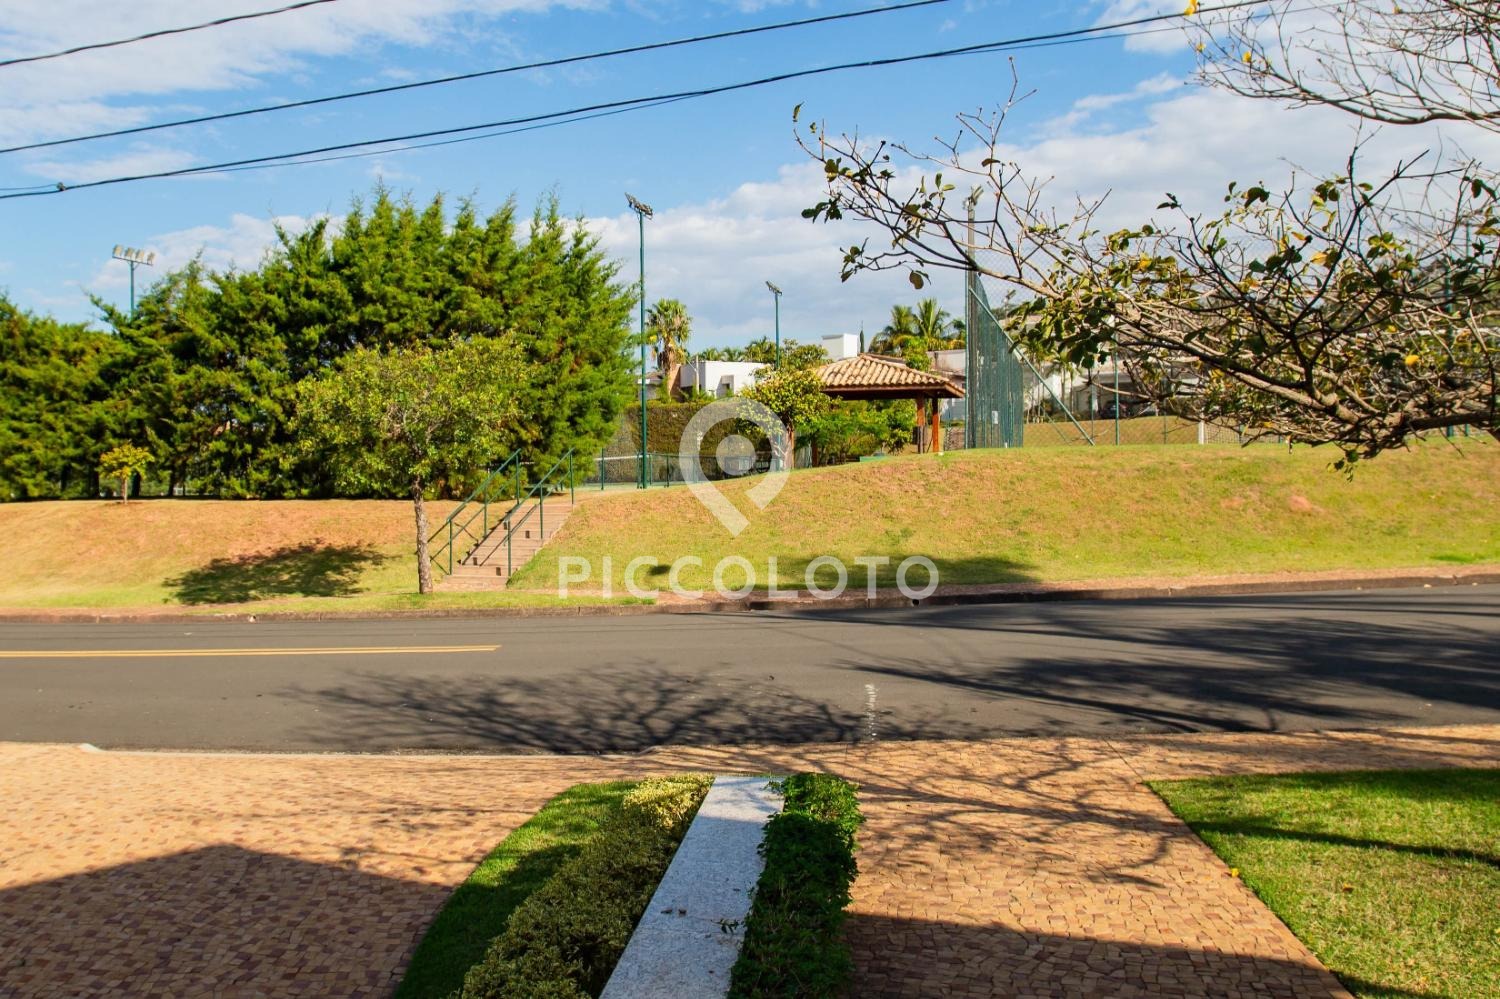 Piccoloto -Casa para alugar no Loteamento Arboreto dos Jequitibás (Sousas) em Campinas